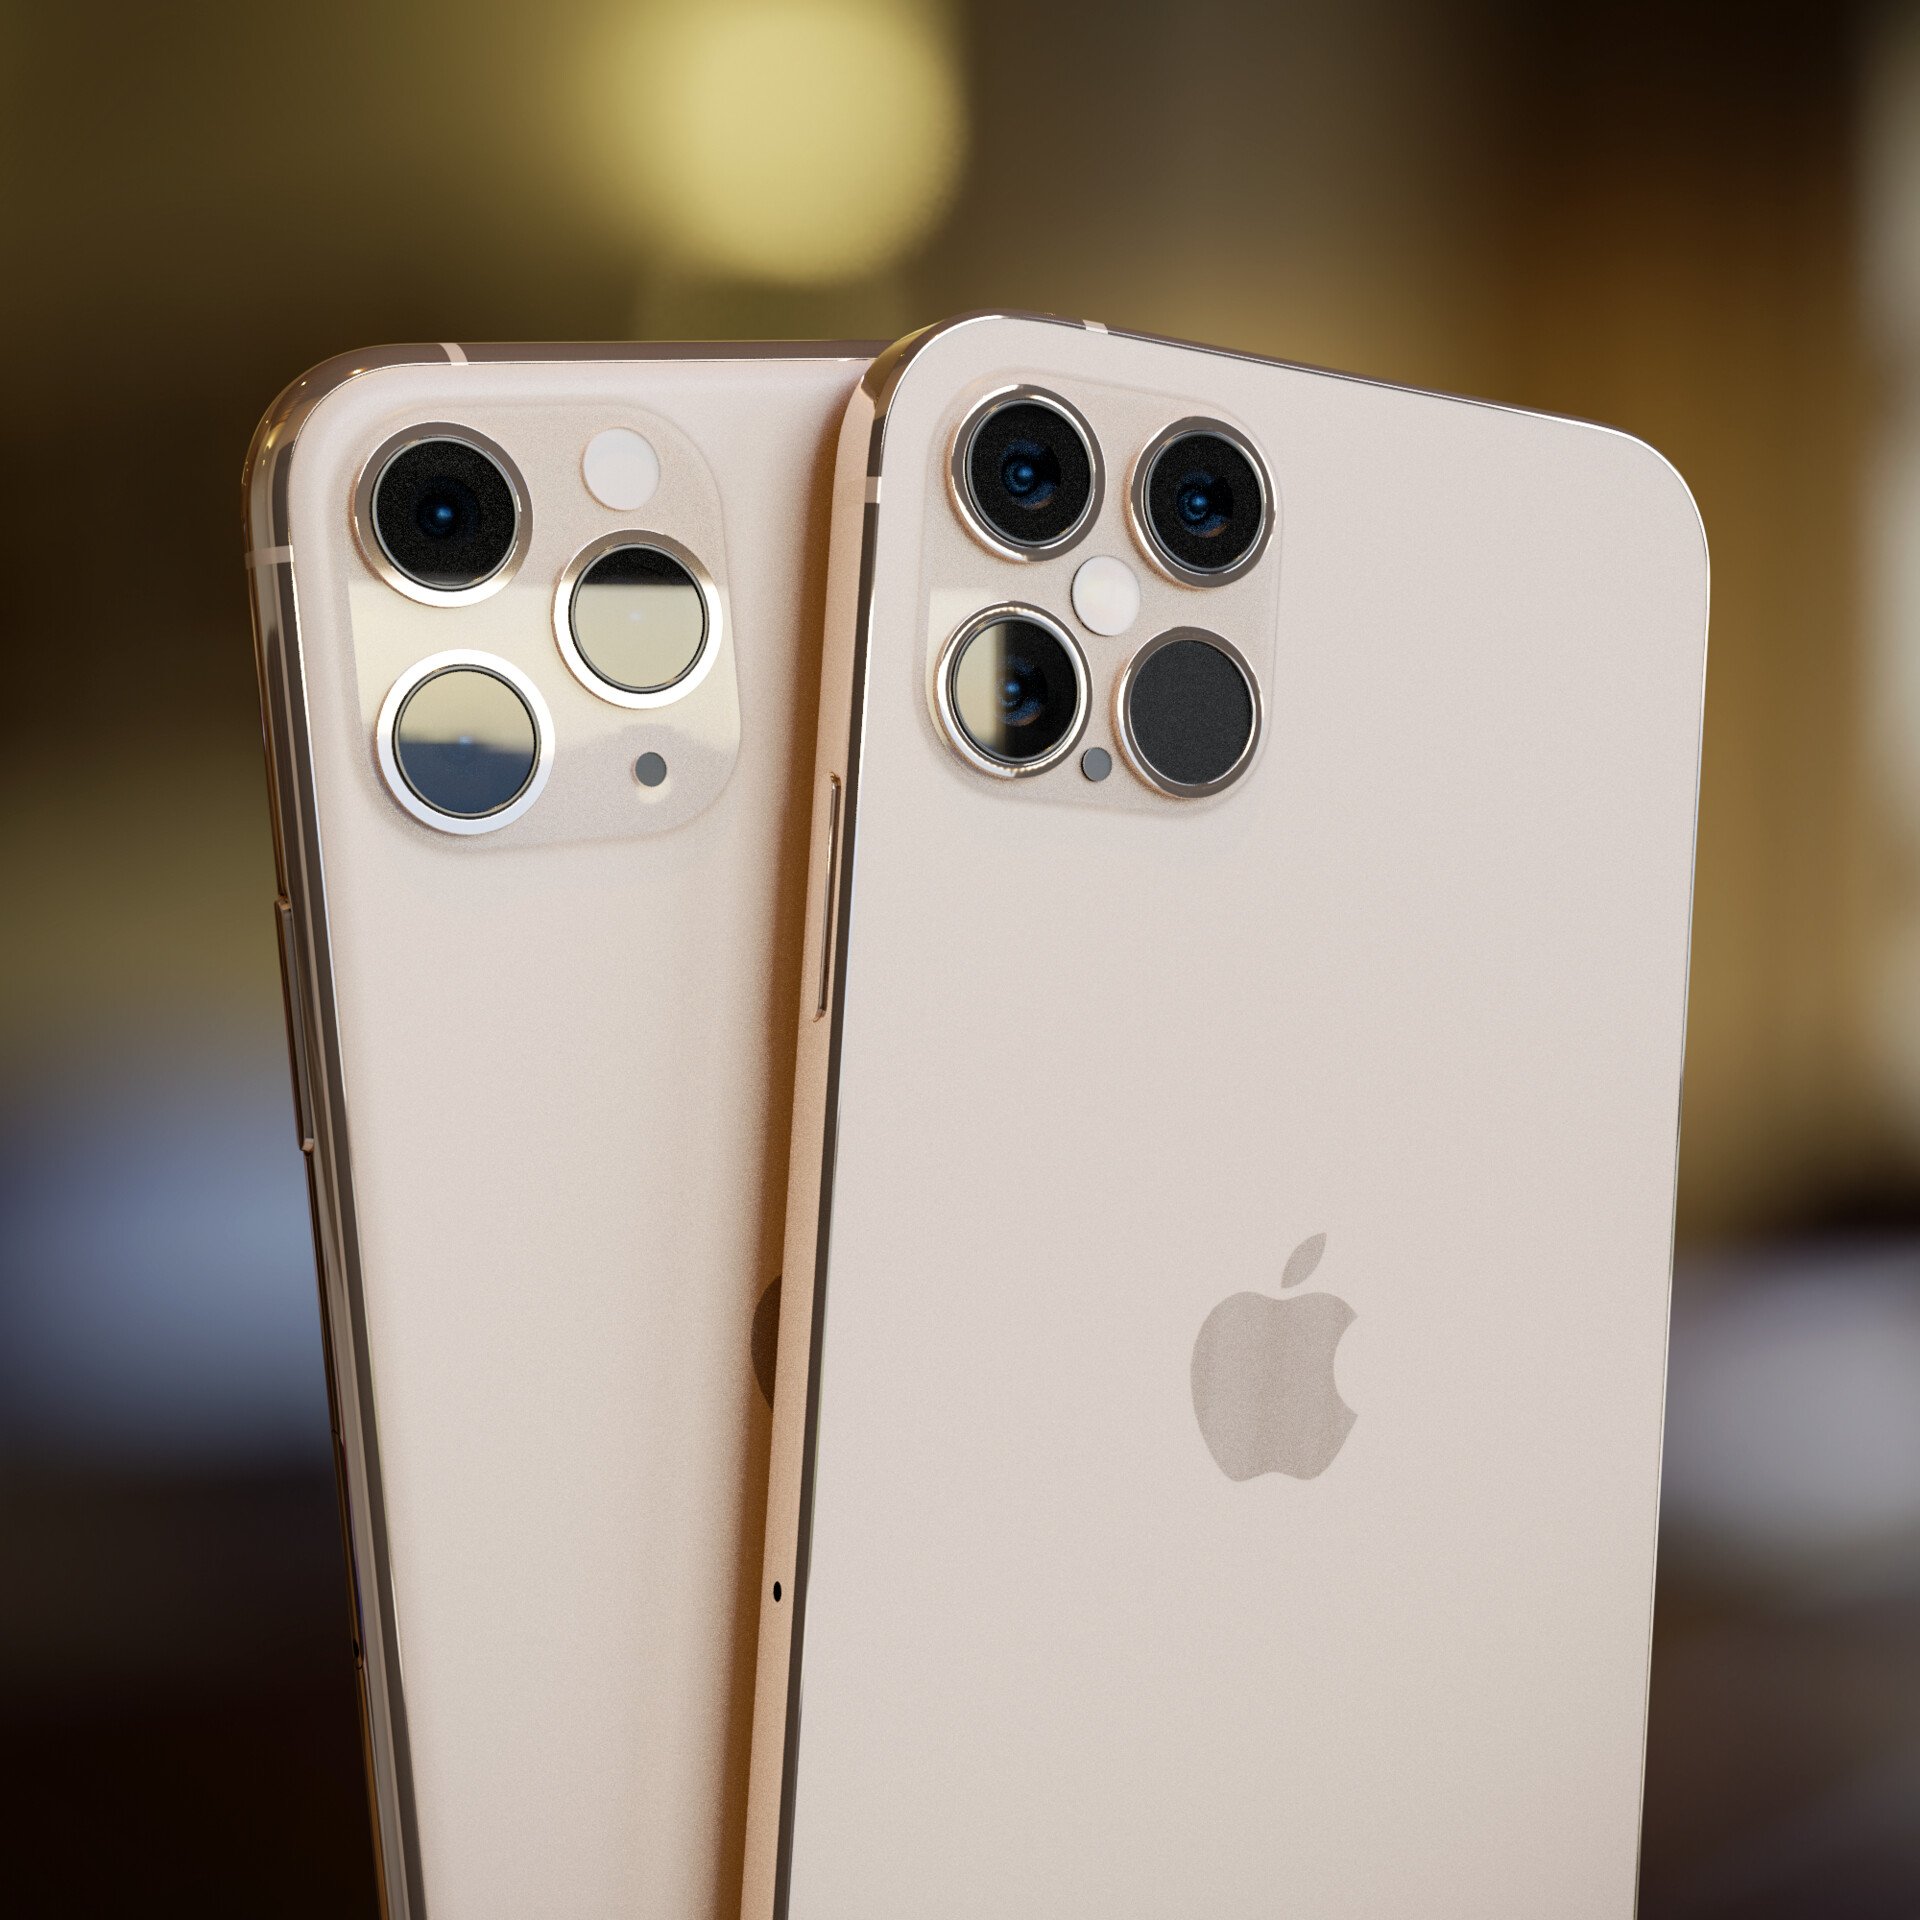 Com poucas mudanças nas câmeras, as versões do iPhone 12 contam modo noturno.